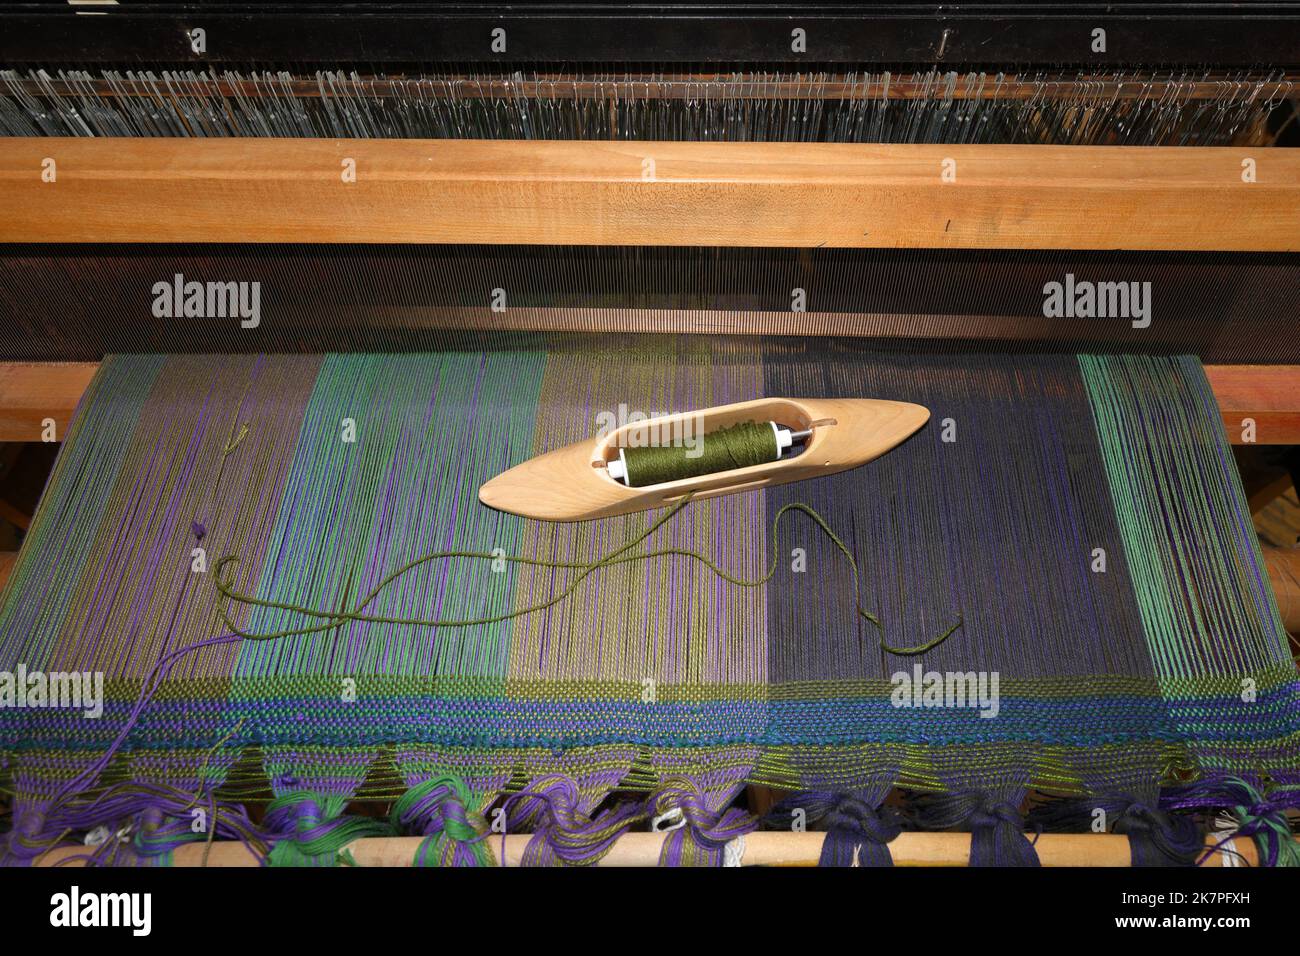 Ein Bootsshuttle mit offenem Boden und einer Spule aus grünem Garn, die auf einem Webstoff auf einem Webstuhl ruht. Stockfoto